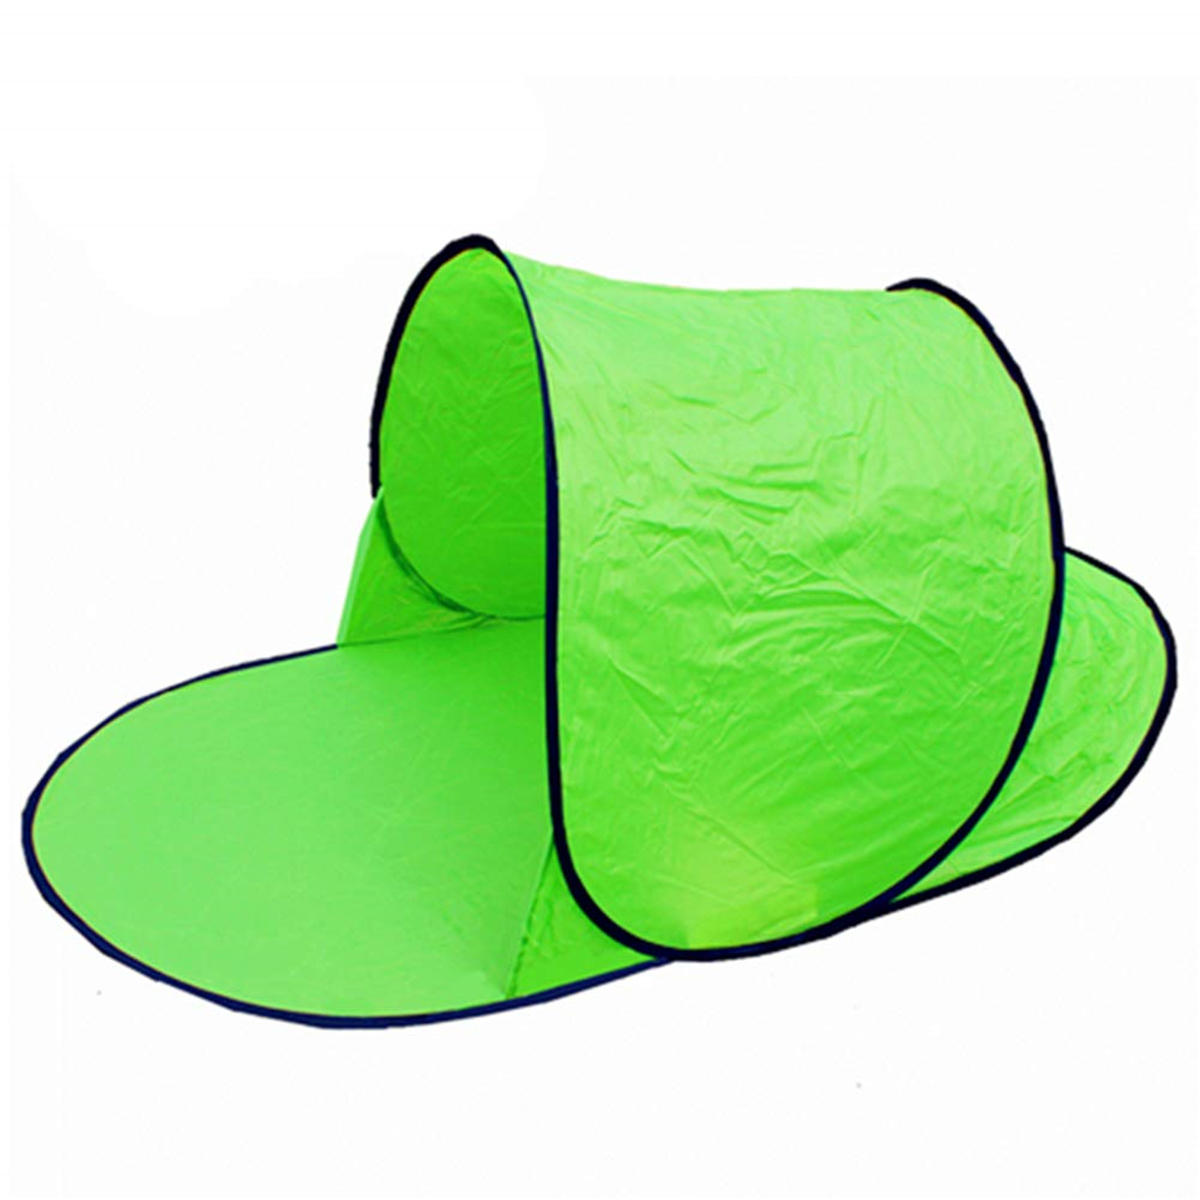 Tenda individual impermeável e com proteção anti-UV para camping, praia e lazer ao ar livre.